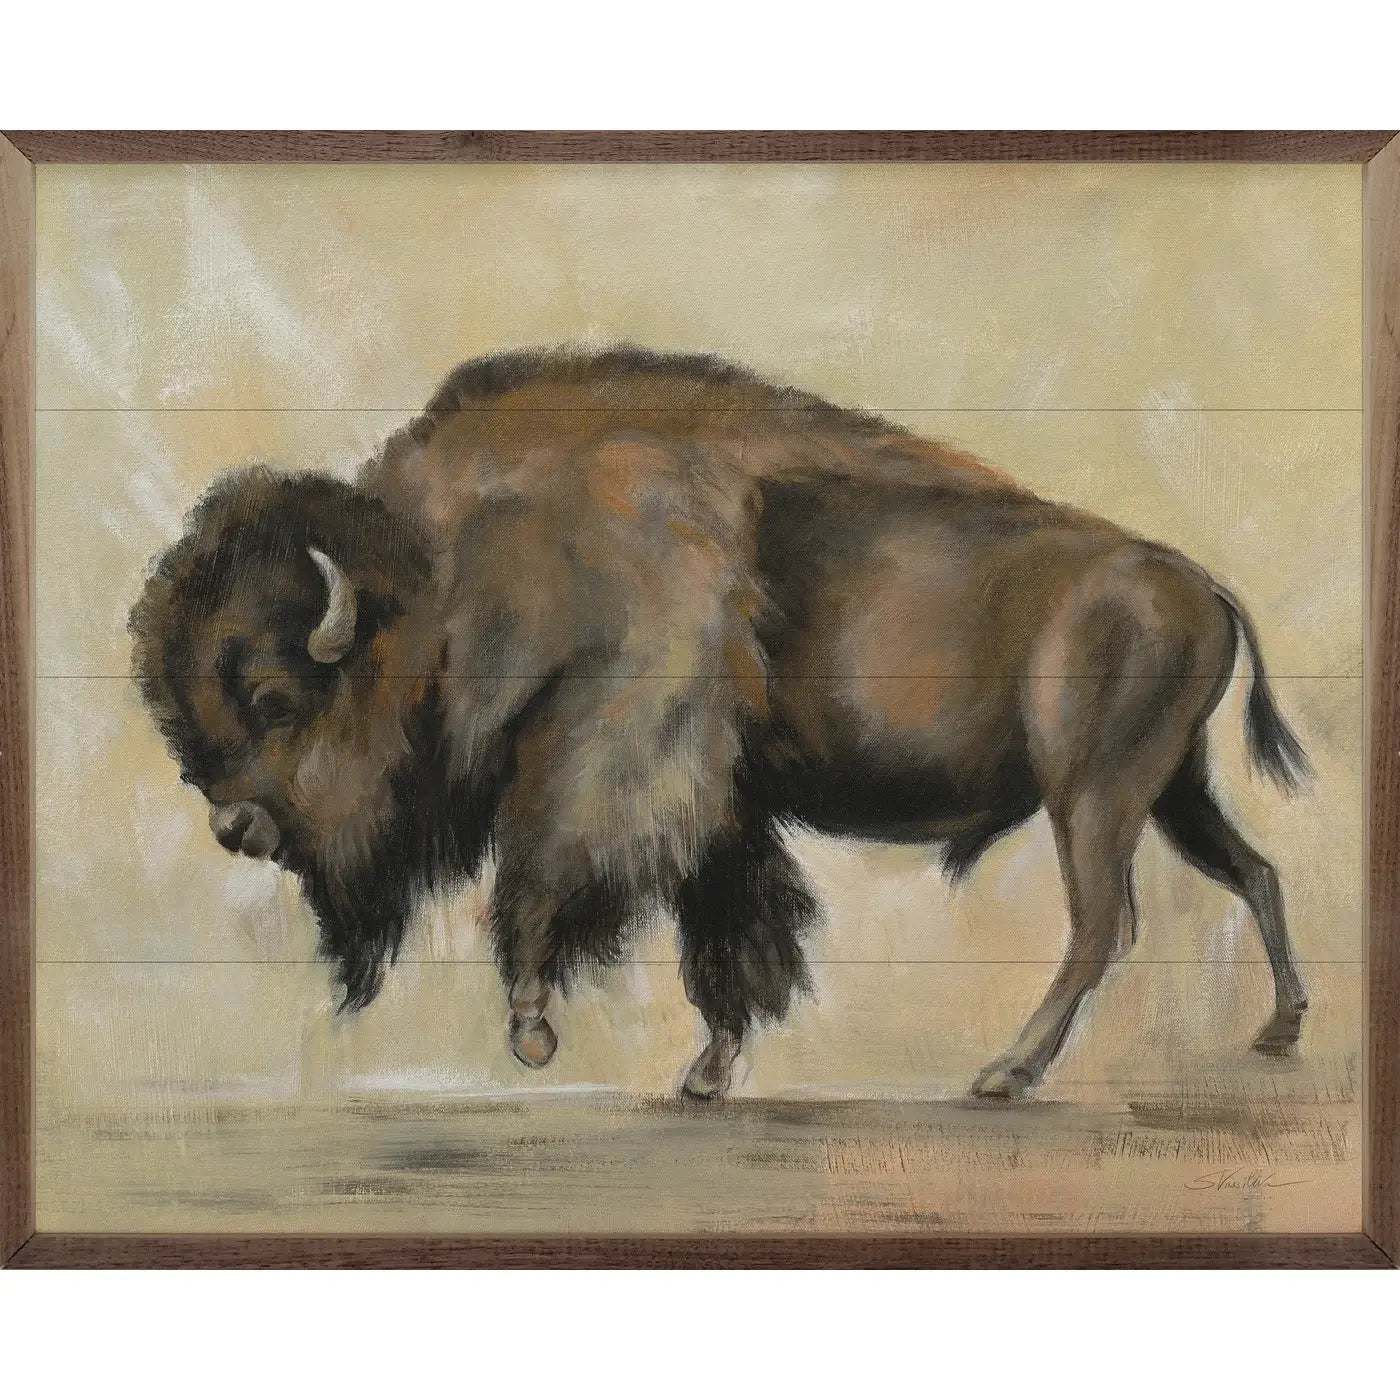 Bronze Buffalo By Silvia Vassileva: 20 x 16 x 1.5